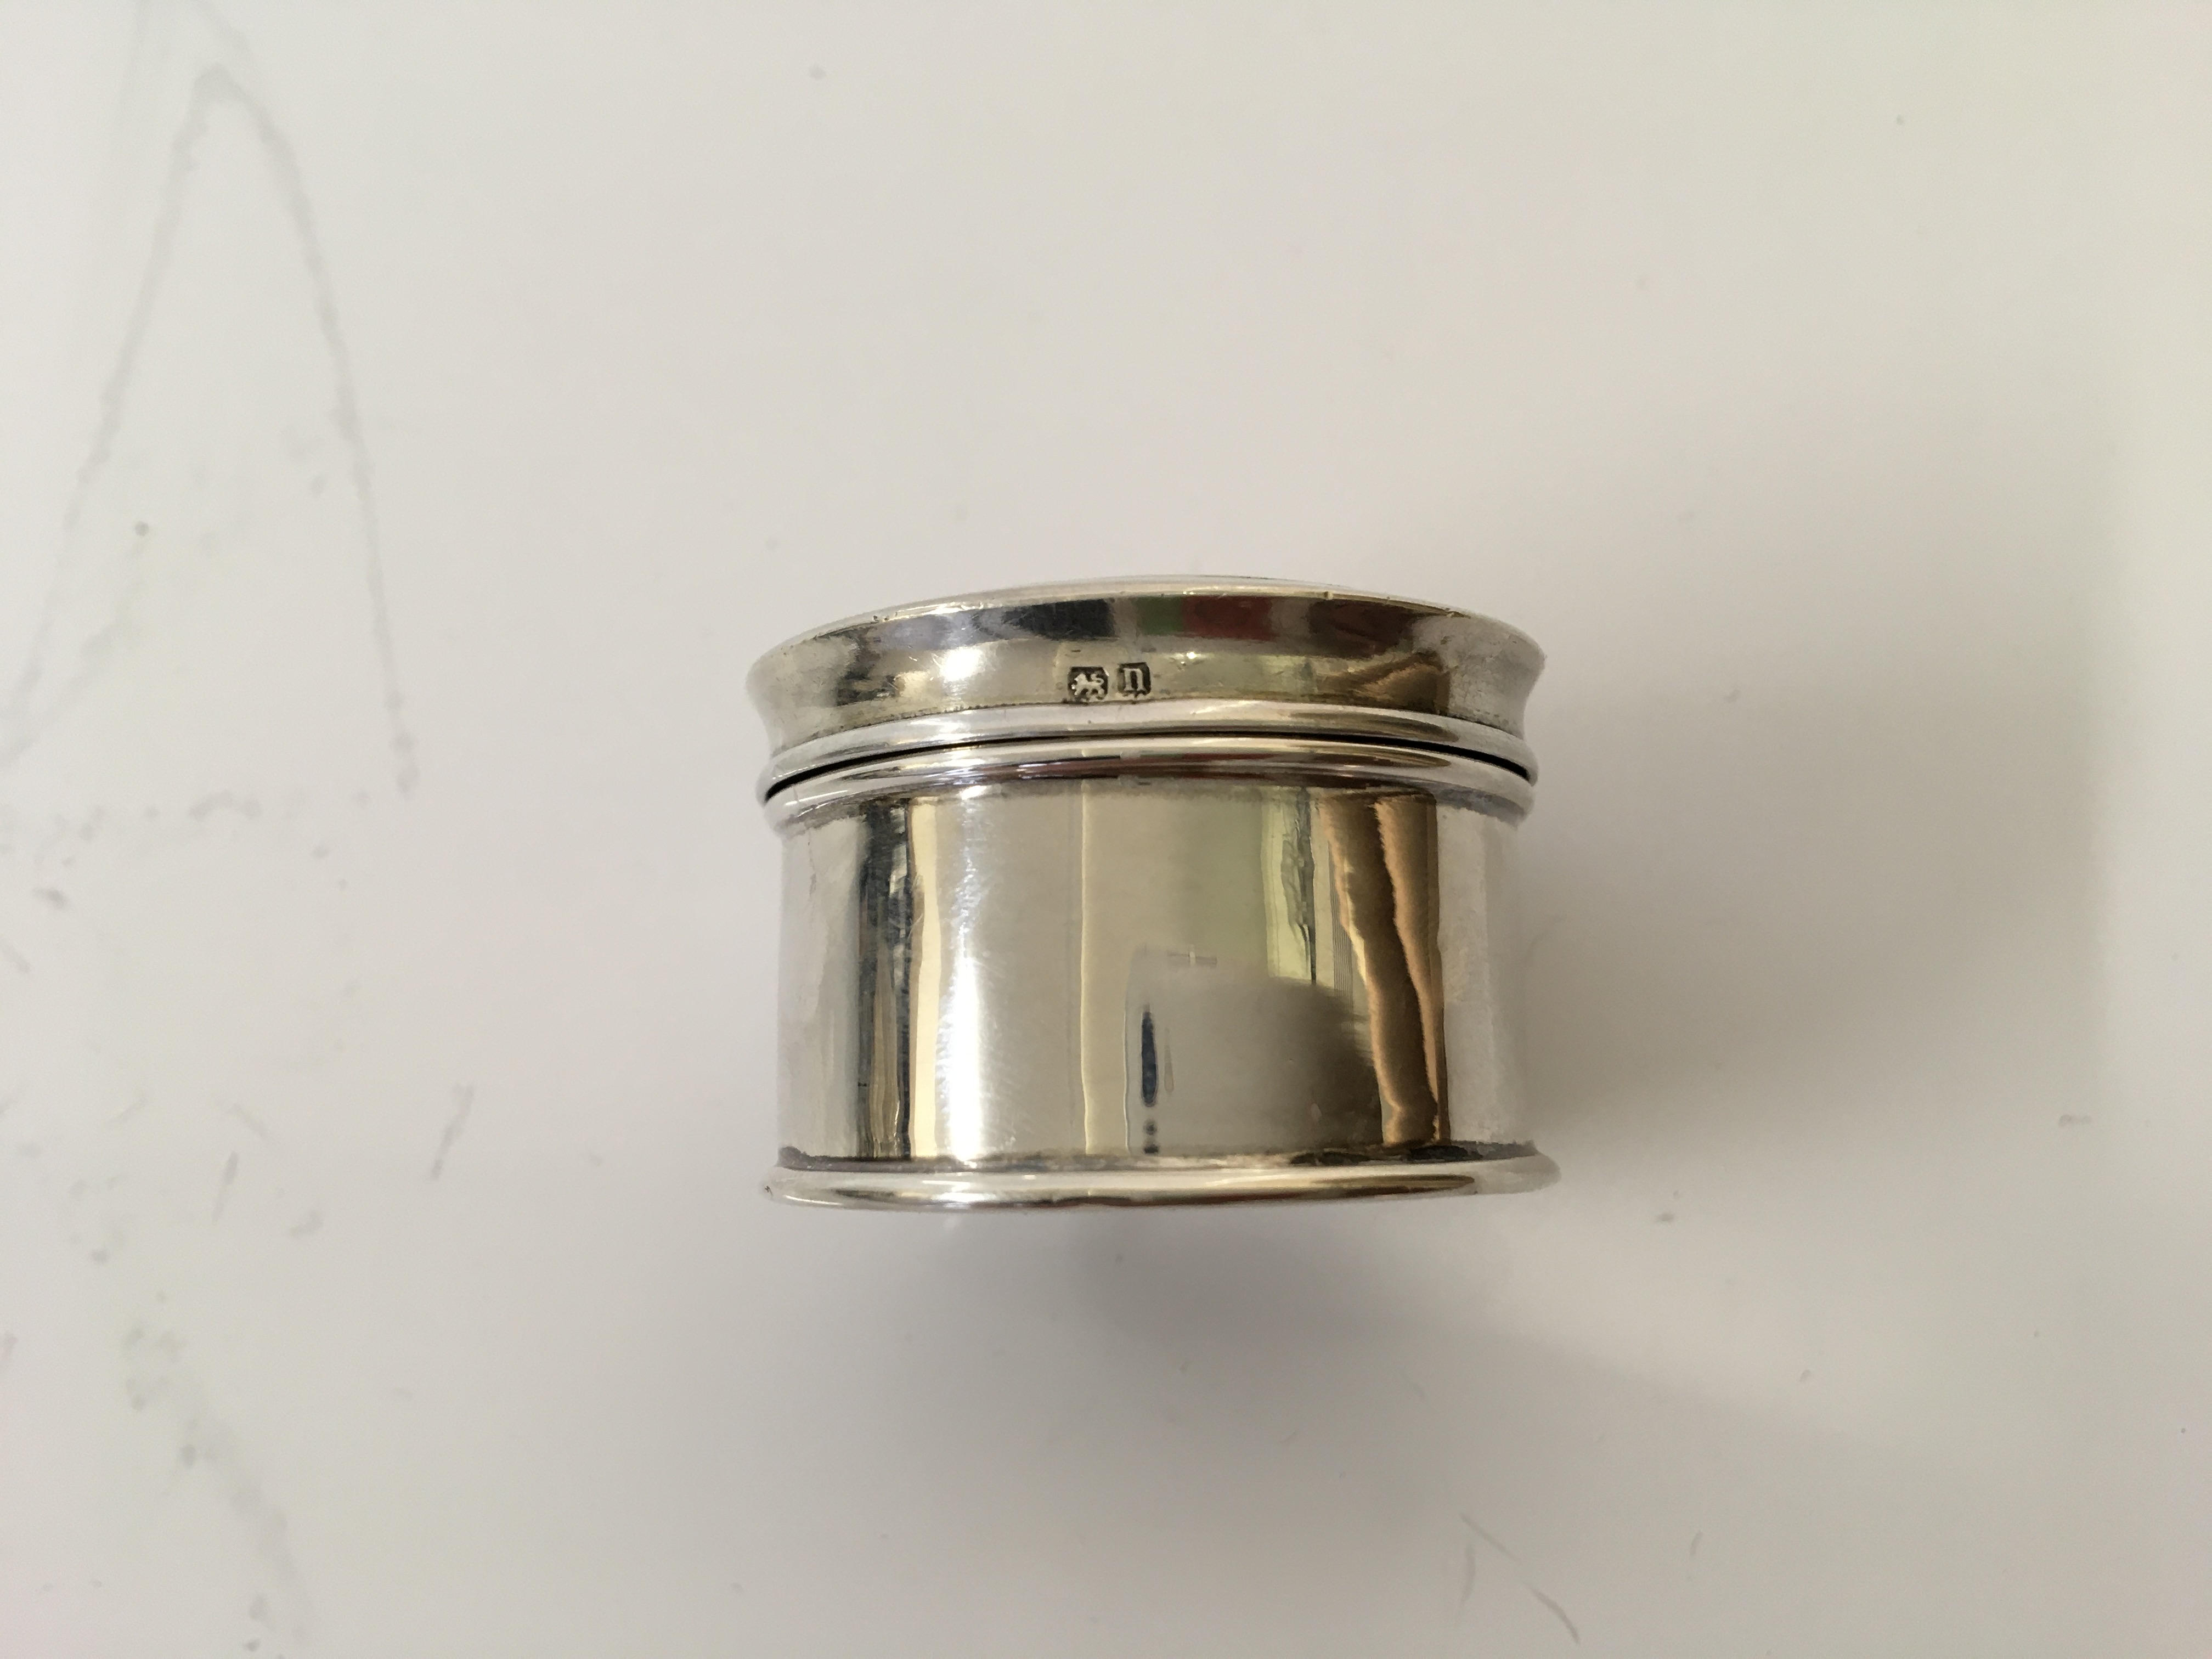 A small silver circular compact